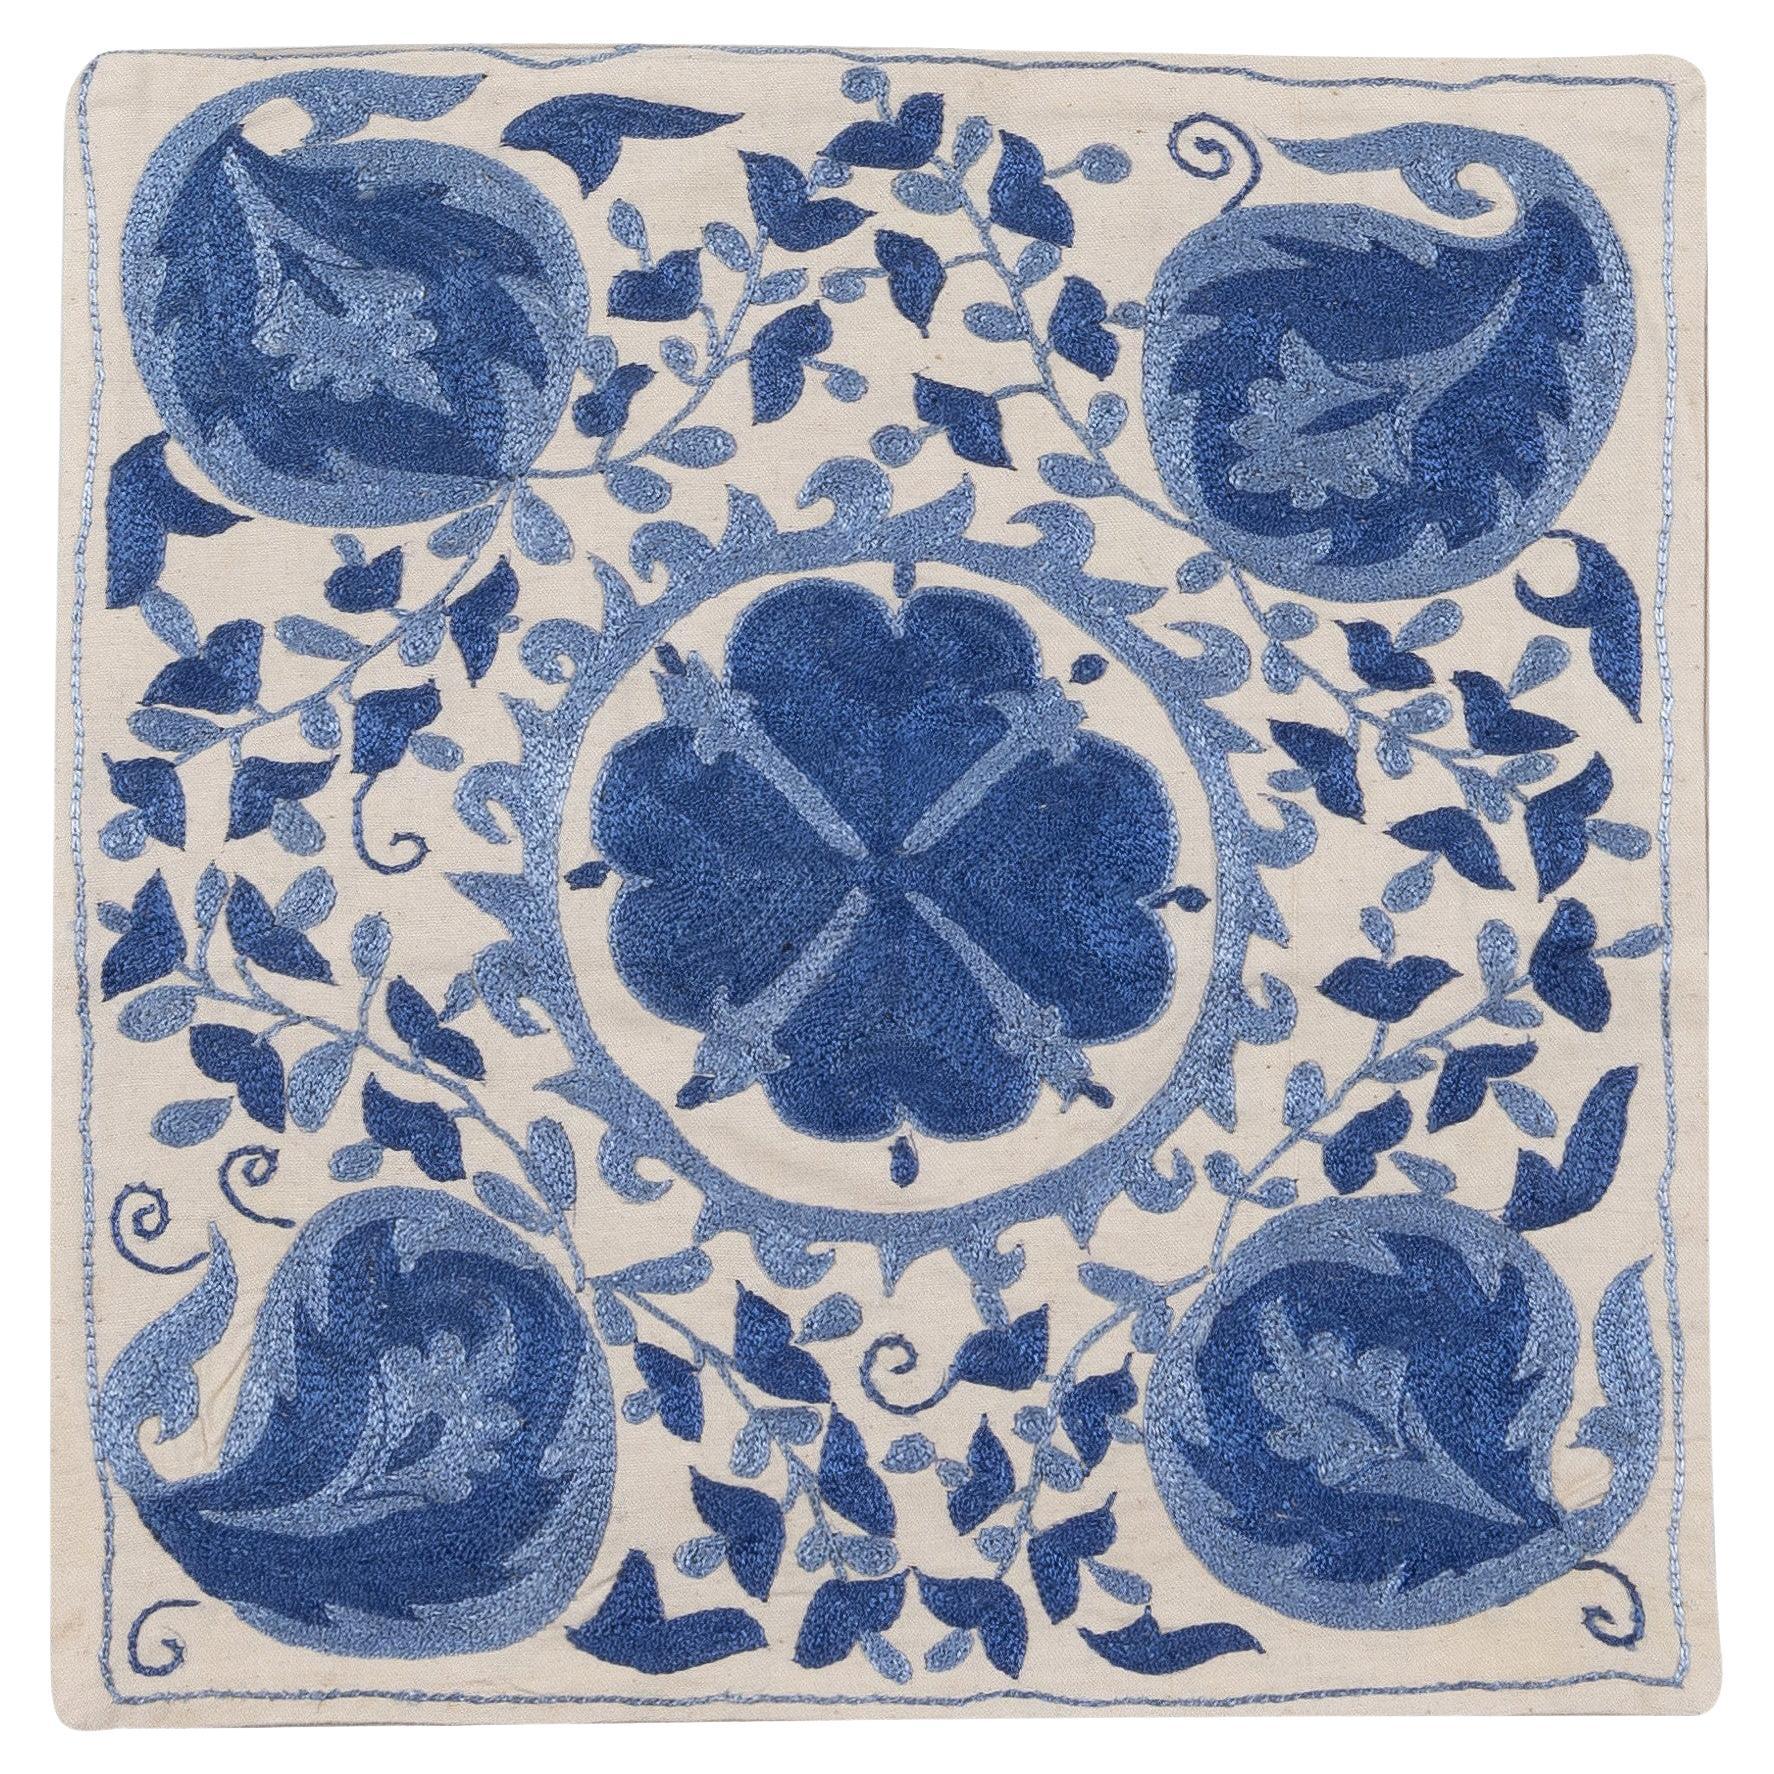 Decorative Silk Embroidered Suzani Cushion Cover in Cream & Light Blue 18" x 17"